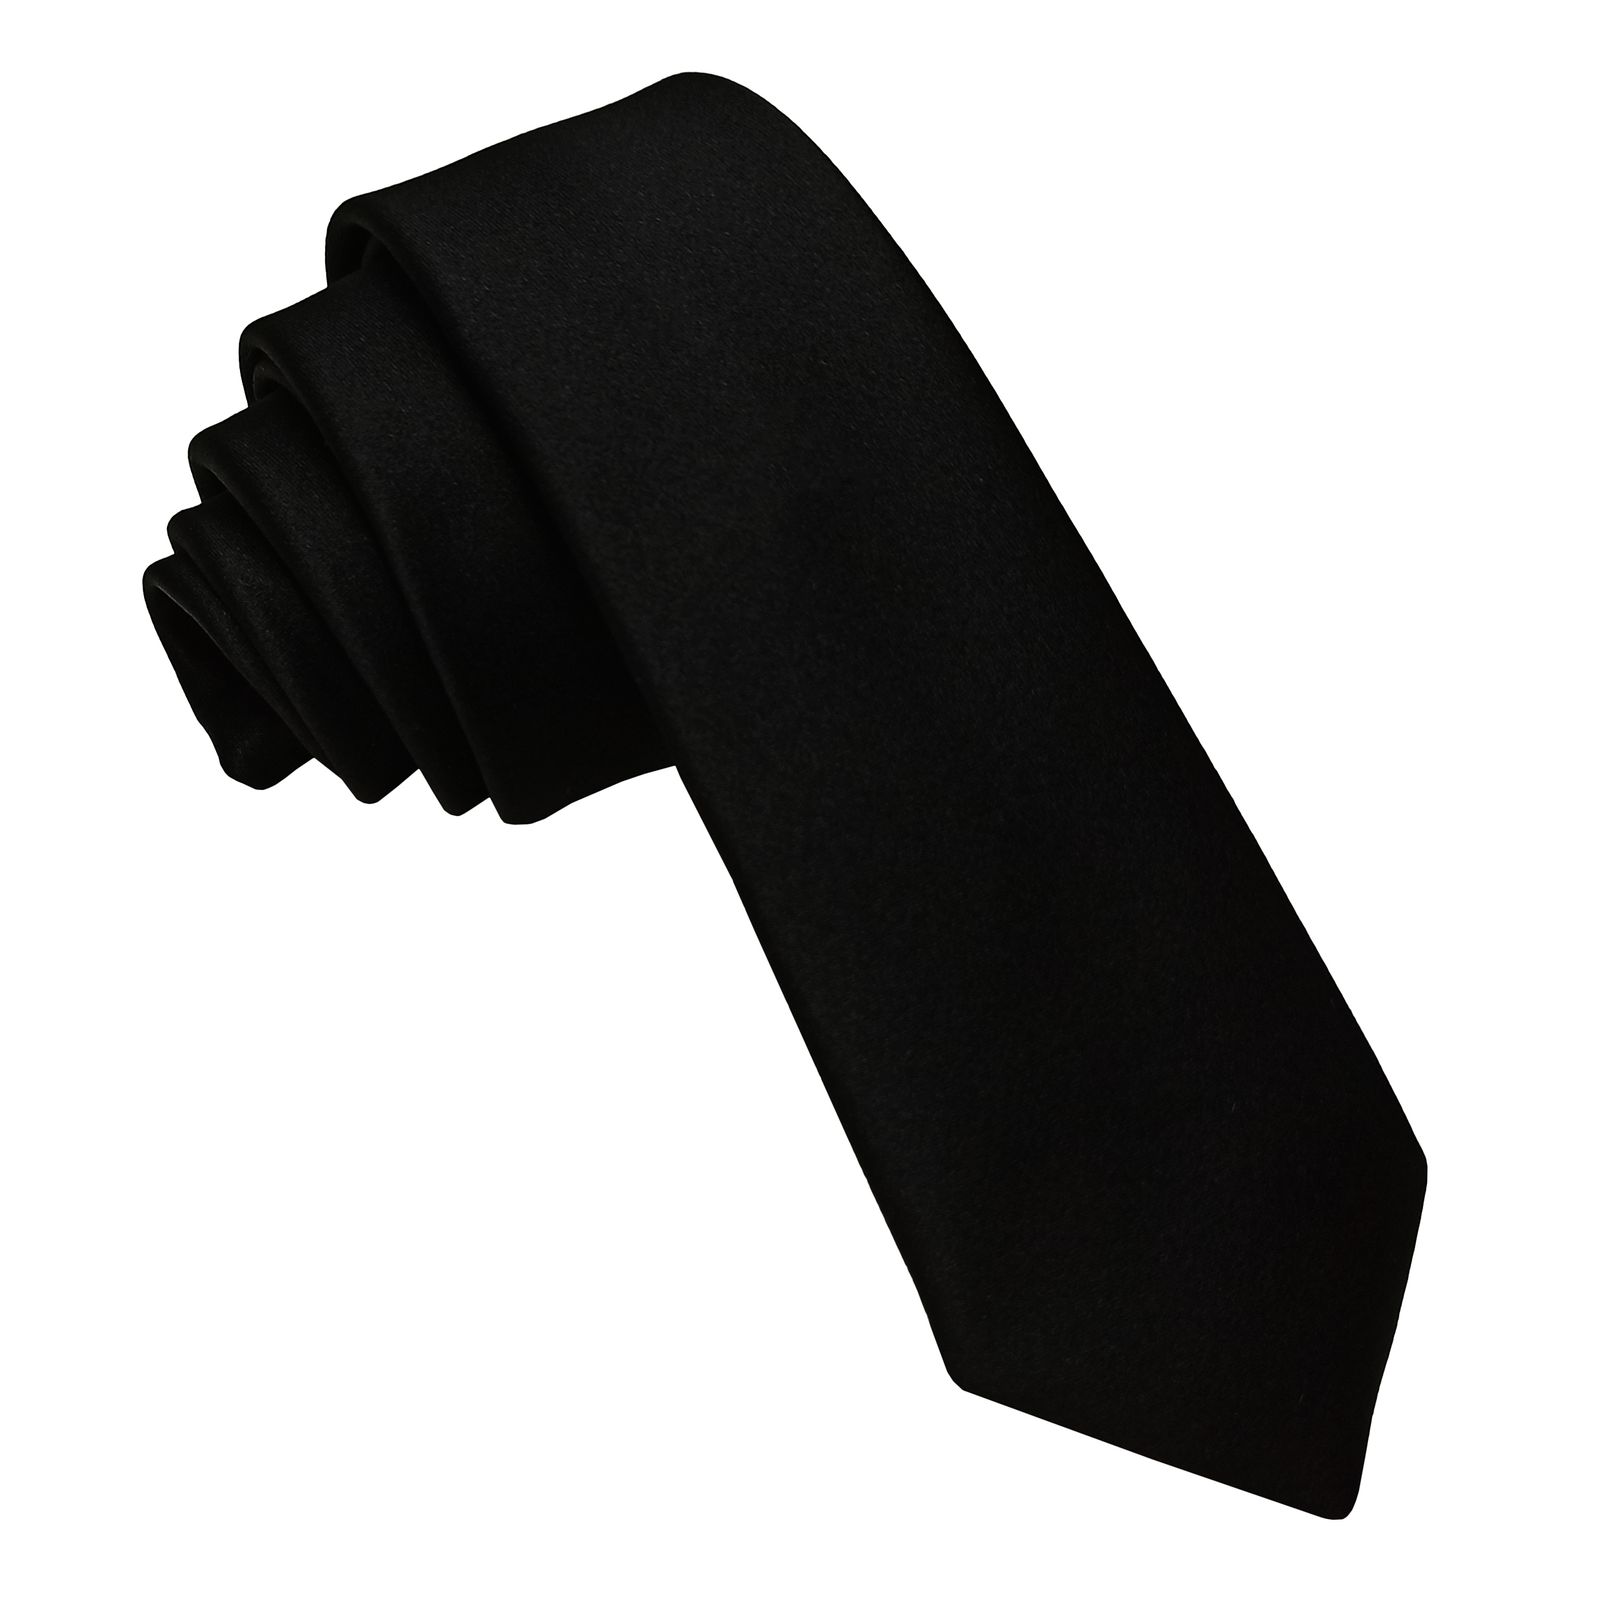 ست کراوات و دستمال جیب مردانه مدل b1 -  - 3